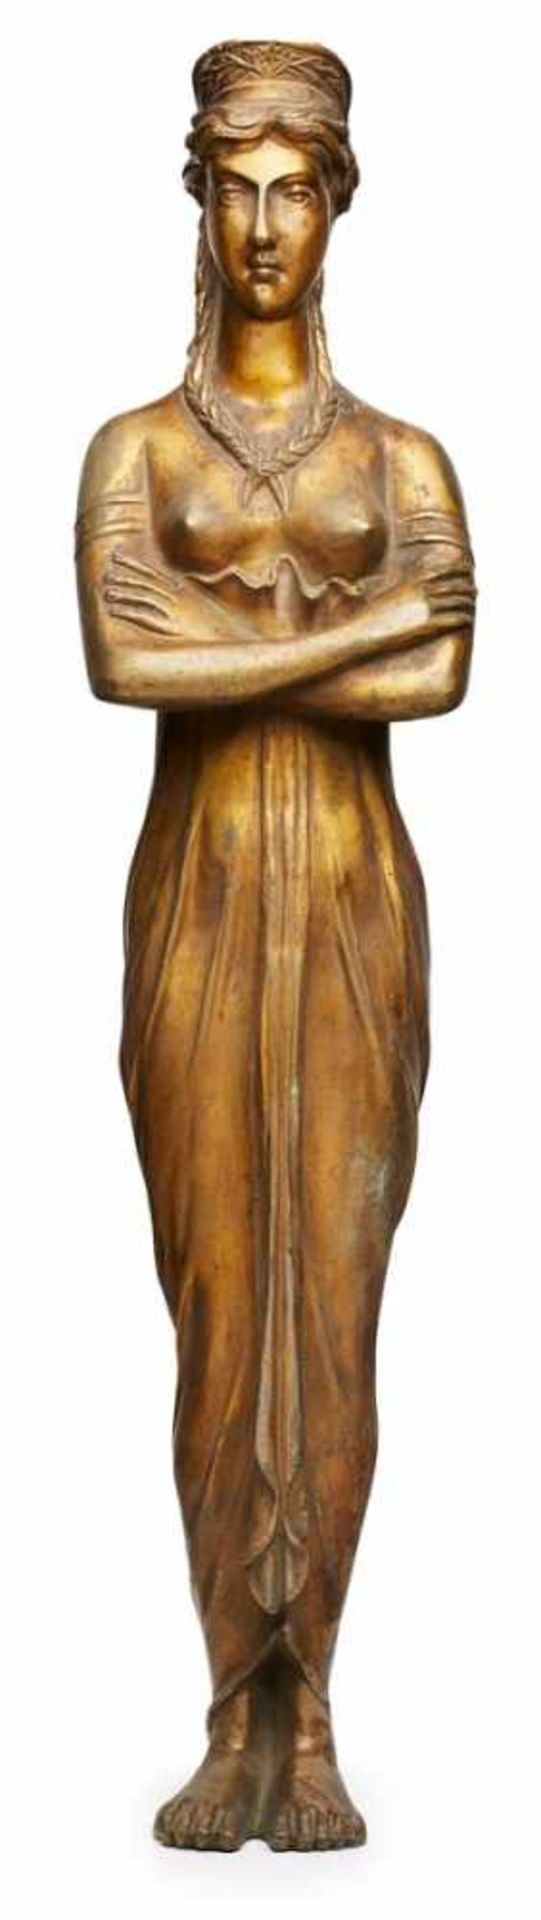 Bronze-Element aus MöbelKaryatide, Empire-Stil, um 1900. Braun patiniert. Schlanke Standfigur in